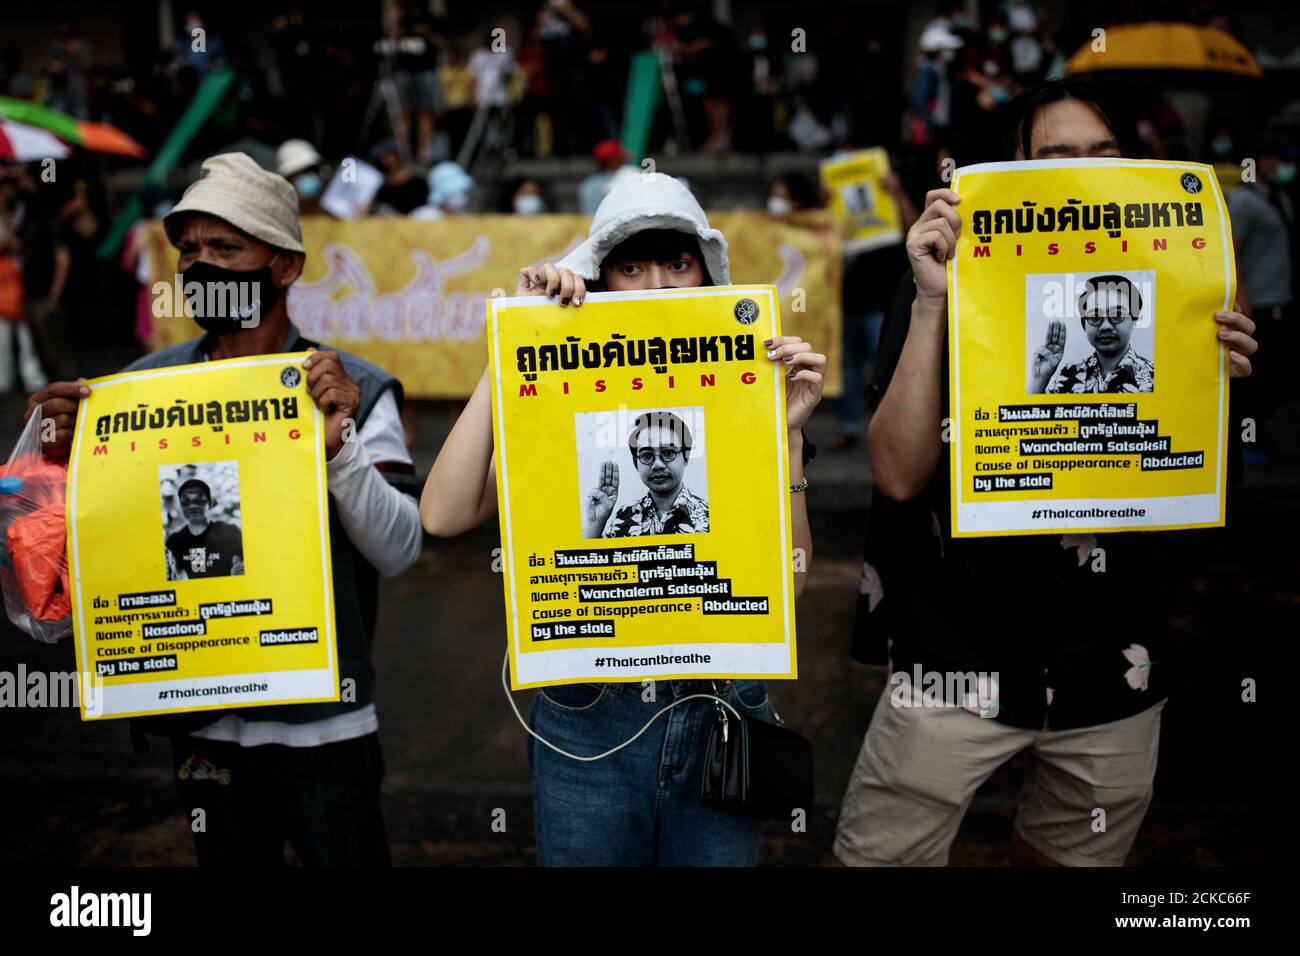 Bilder des verschwundenen thailändischen Aktivisten Wanchalarm Satsaksit werden hochgehalten, während Studenten und prodemokratische Demonstranten am 24. Juli 2020 an der Kasetsart Universität in Bangkok, Thailand, eine Anti-Regierungskundgebung veranstalten (Foto - Jack Taylor) Stockfoto